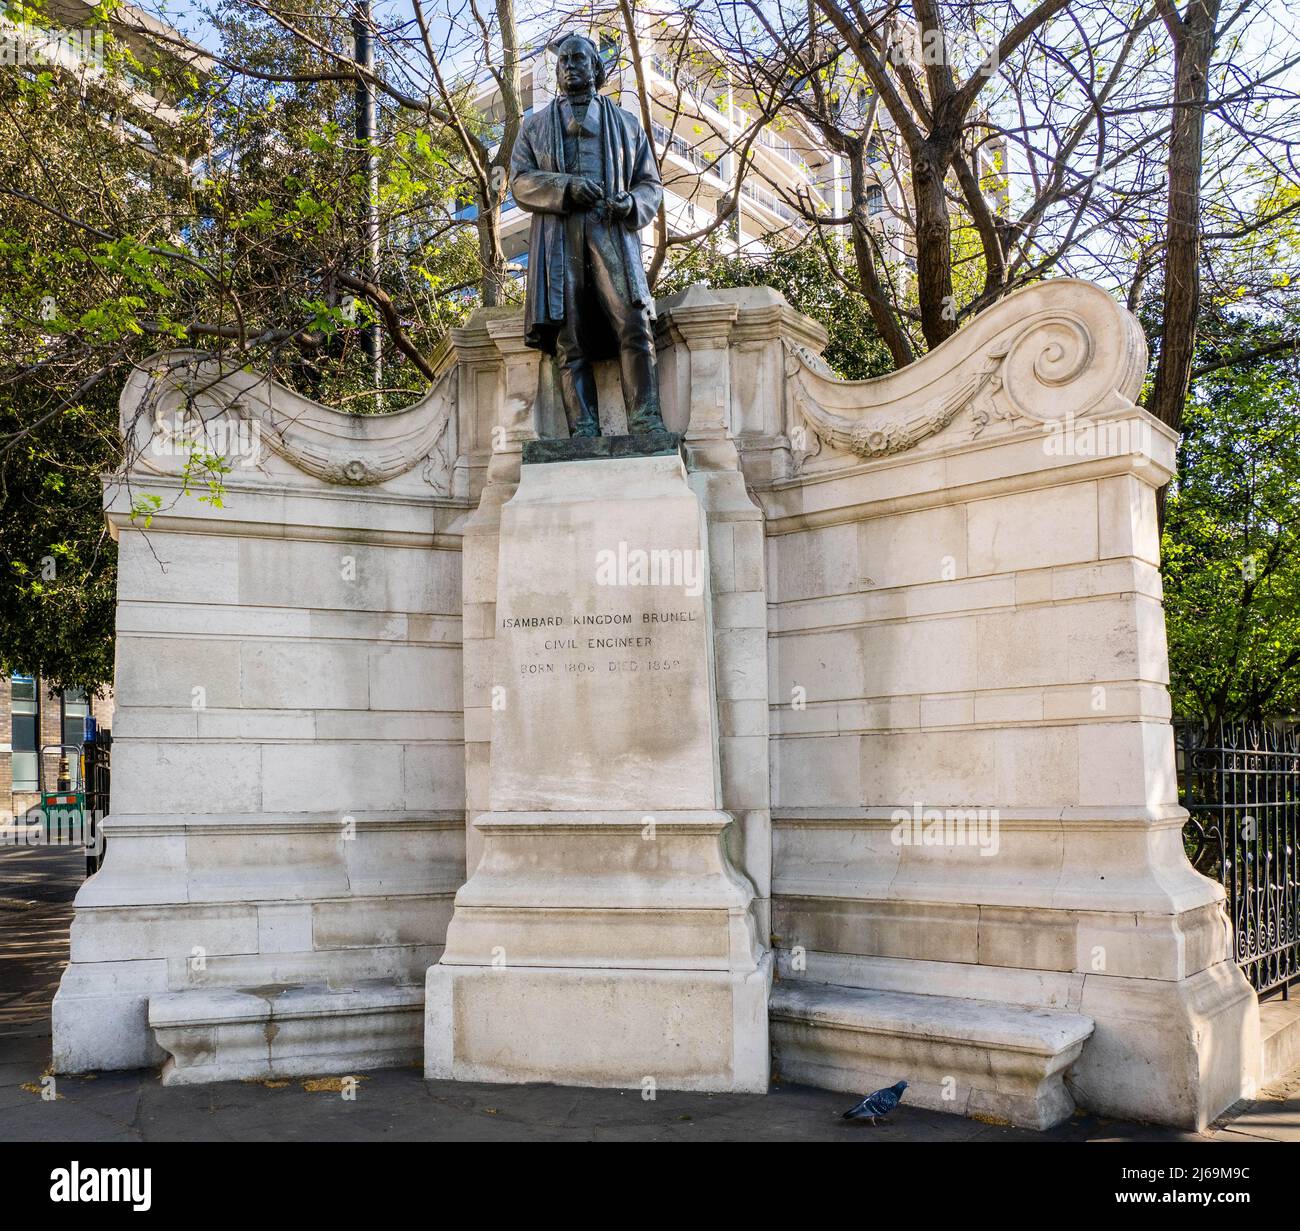 Denkmal für den bahnbrechenden viktorianischen Ingenieur Isambard Kingdom Brunel am Ufer der Themse in London, Großbritannien Stockfoto